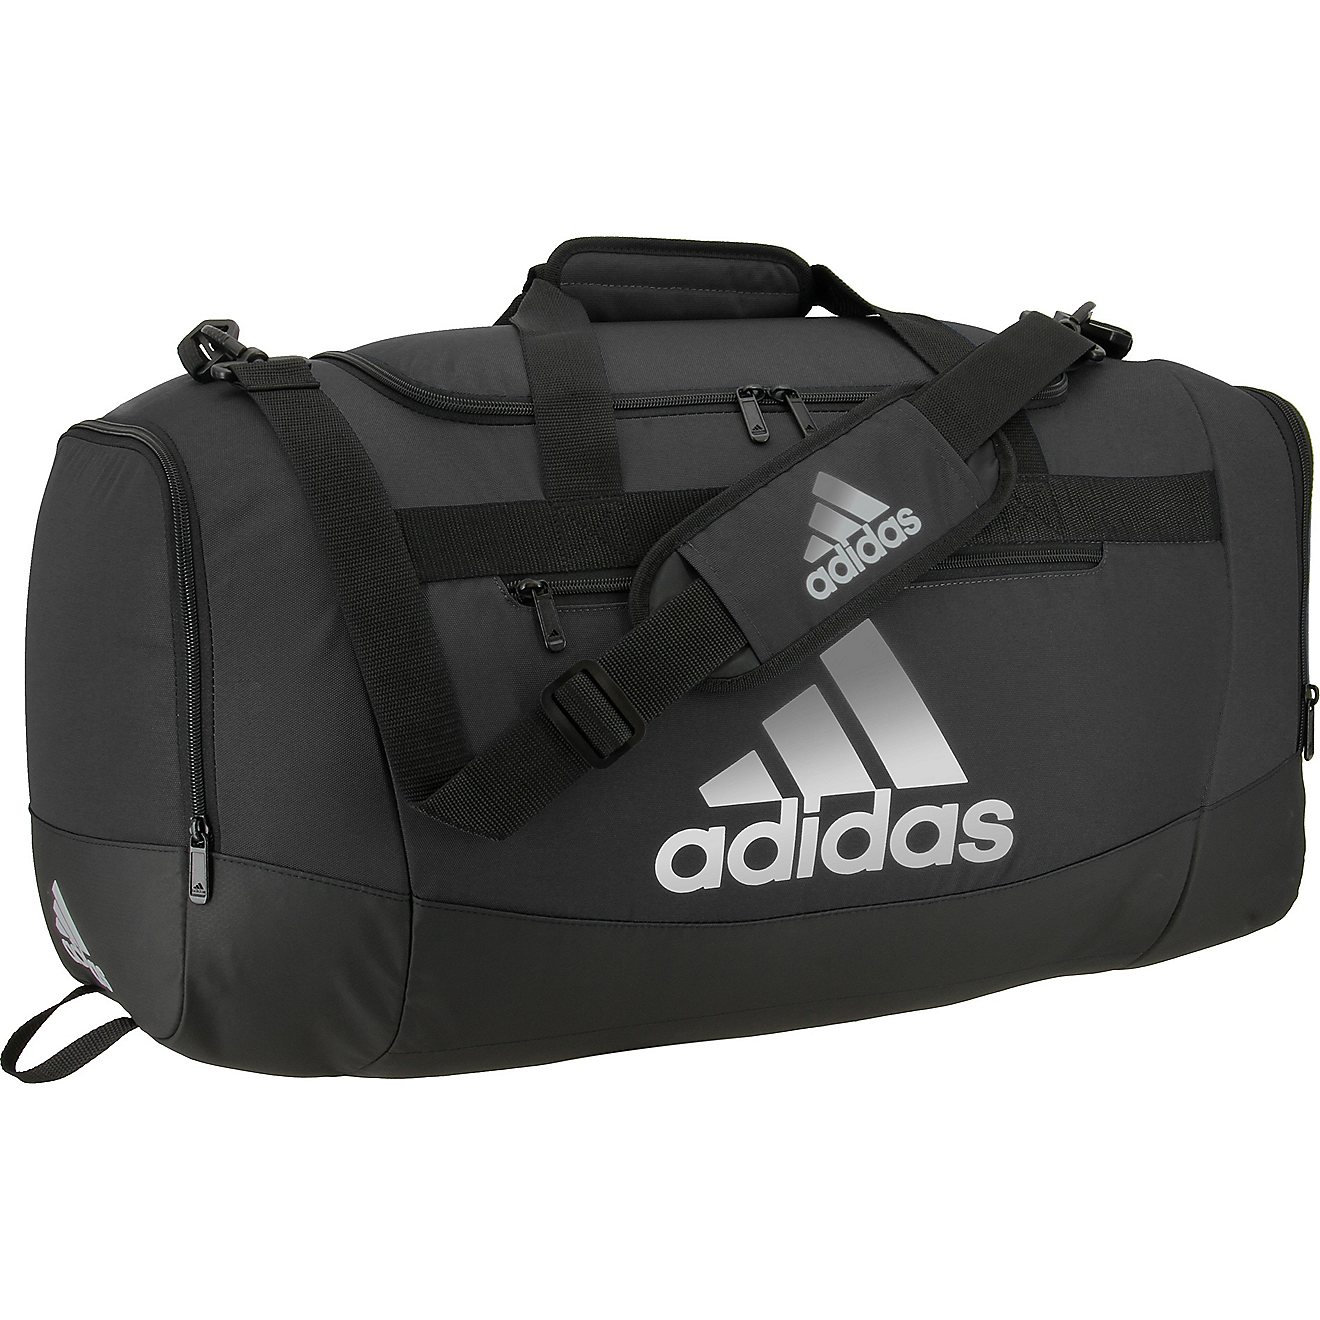 adidas Defender IV Medium Duffel Bag                                                                                             - view number 3